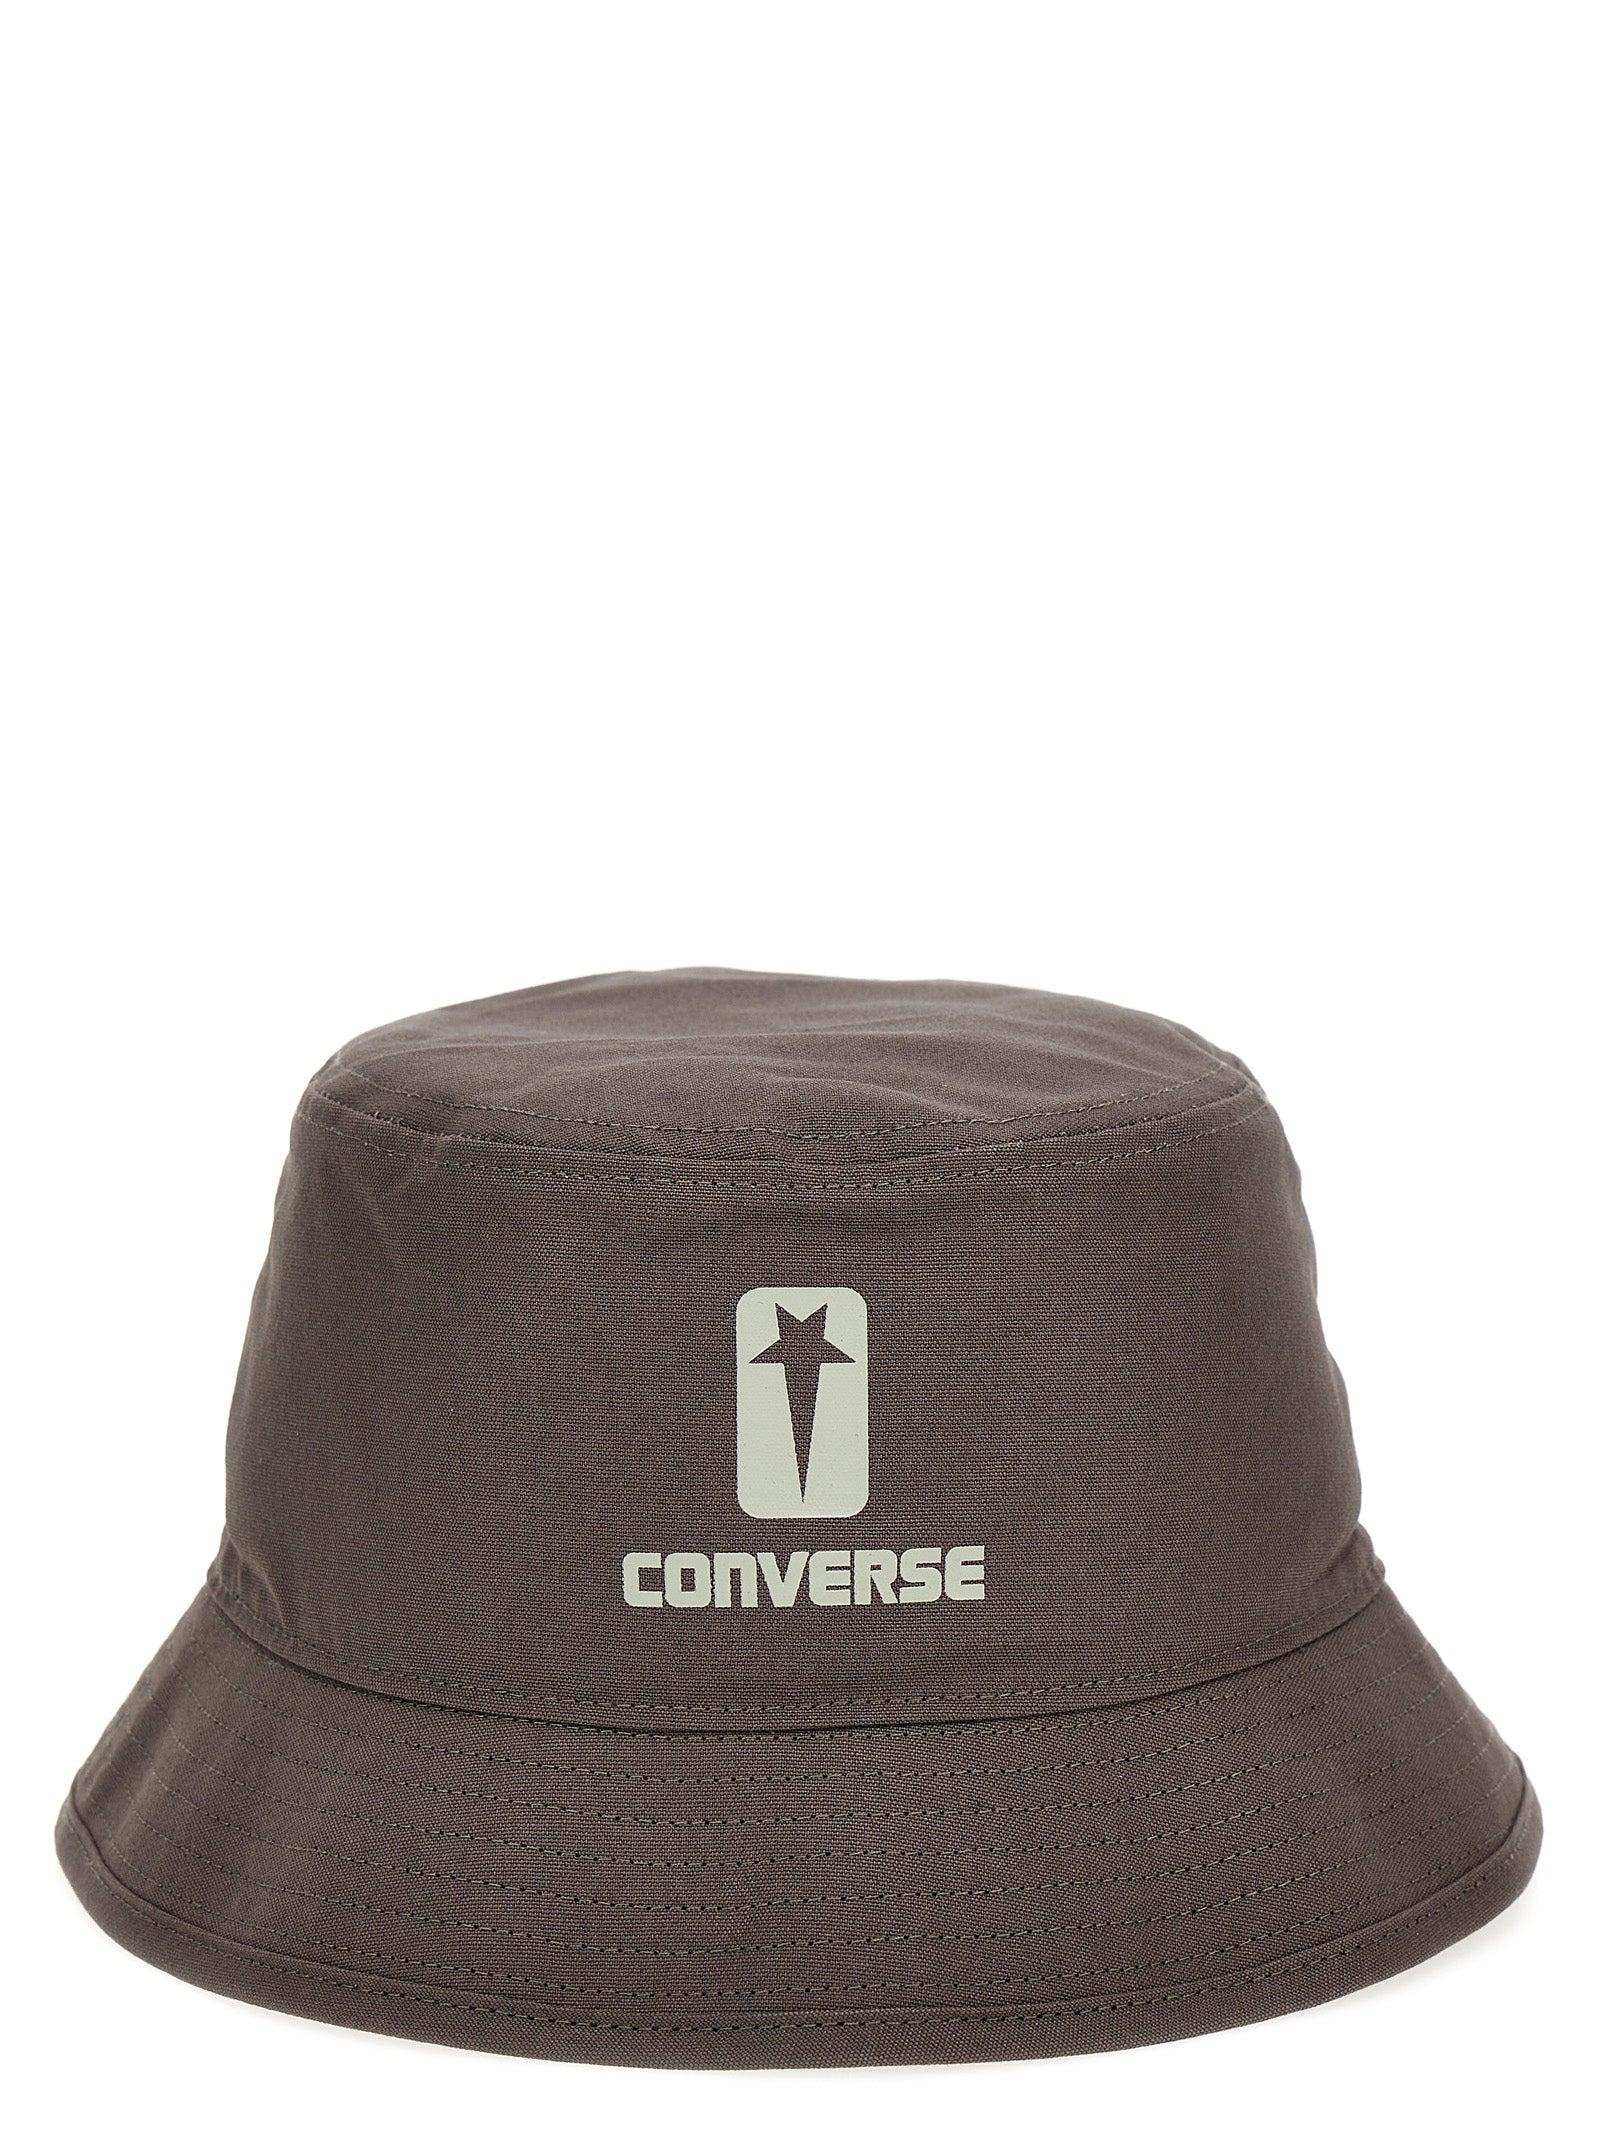 Rick Owens DRKSHDW Drkshw X Converse Bucket Hat Hats in Brown | Lyst UK